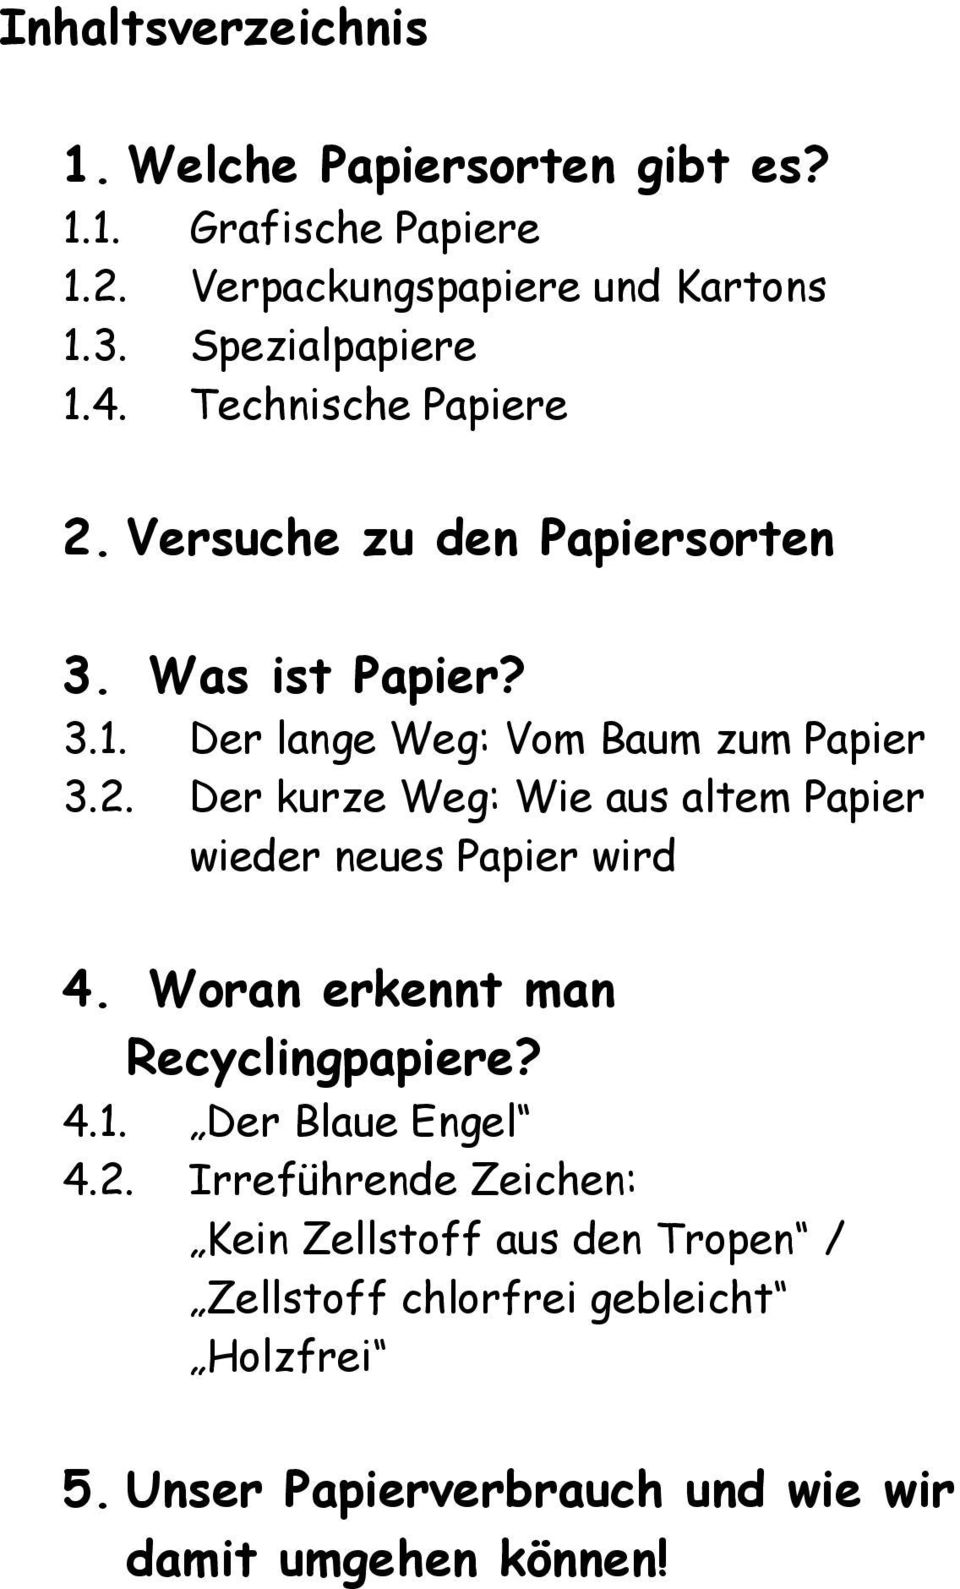 Woran erkennt man Recyclingpapiere? 4.1. Der Blaue Engel 4.2.